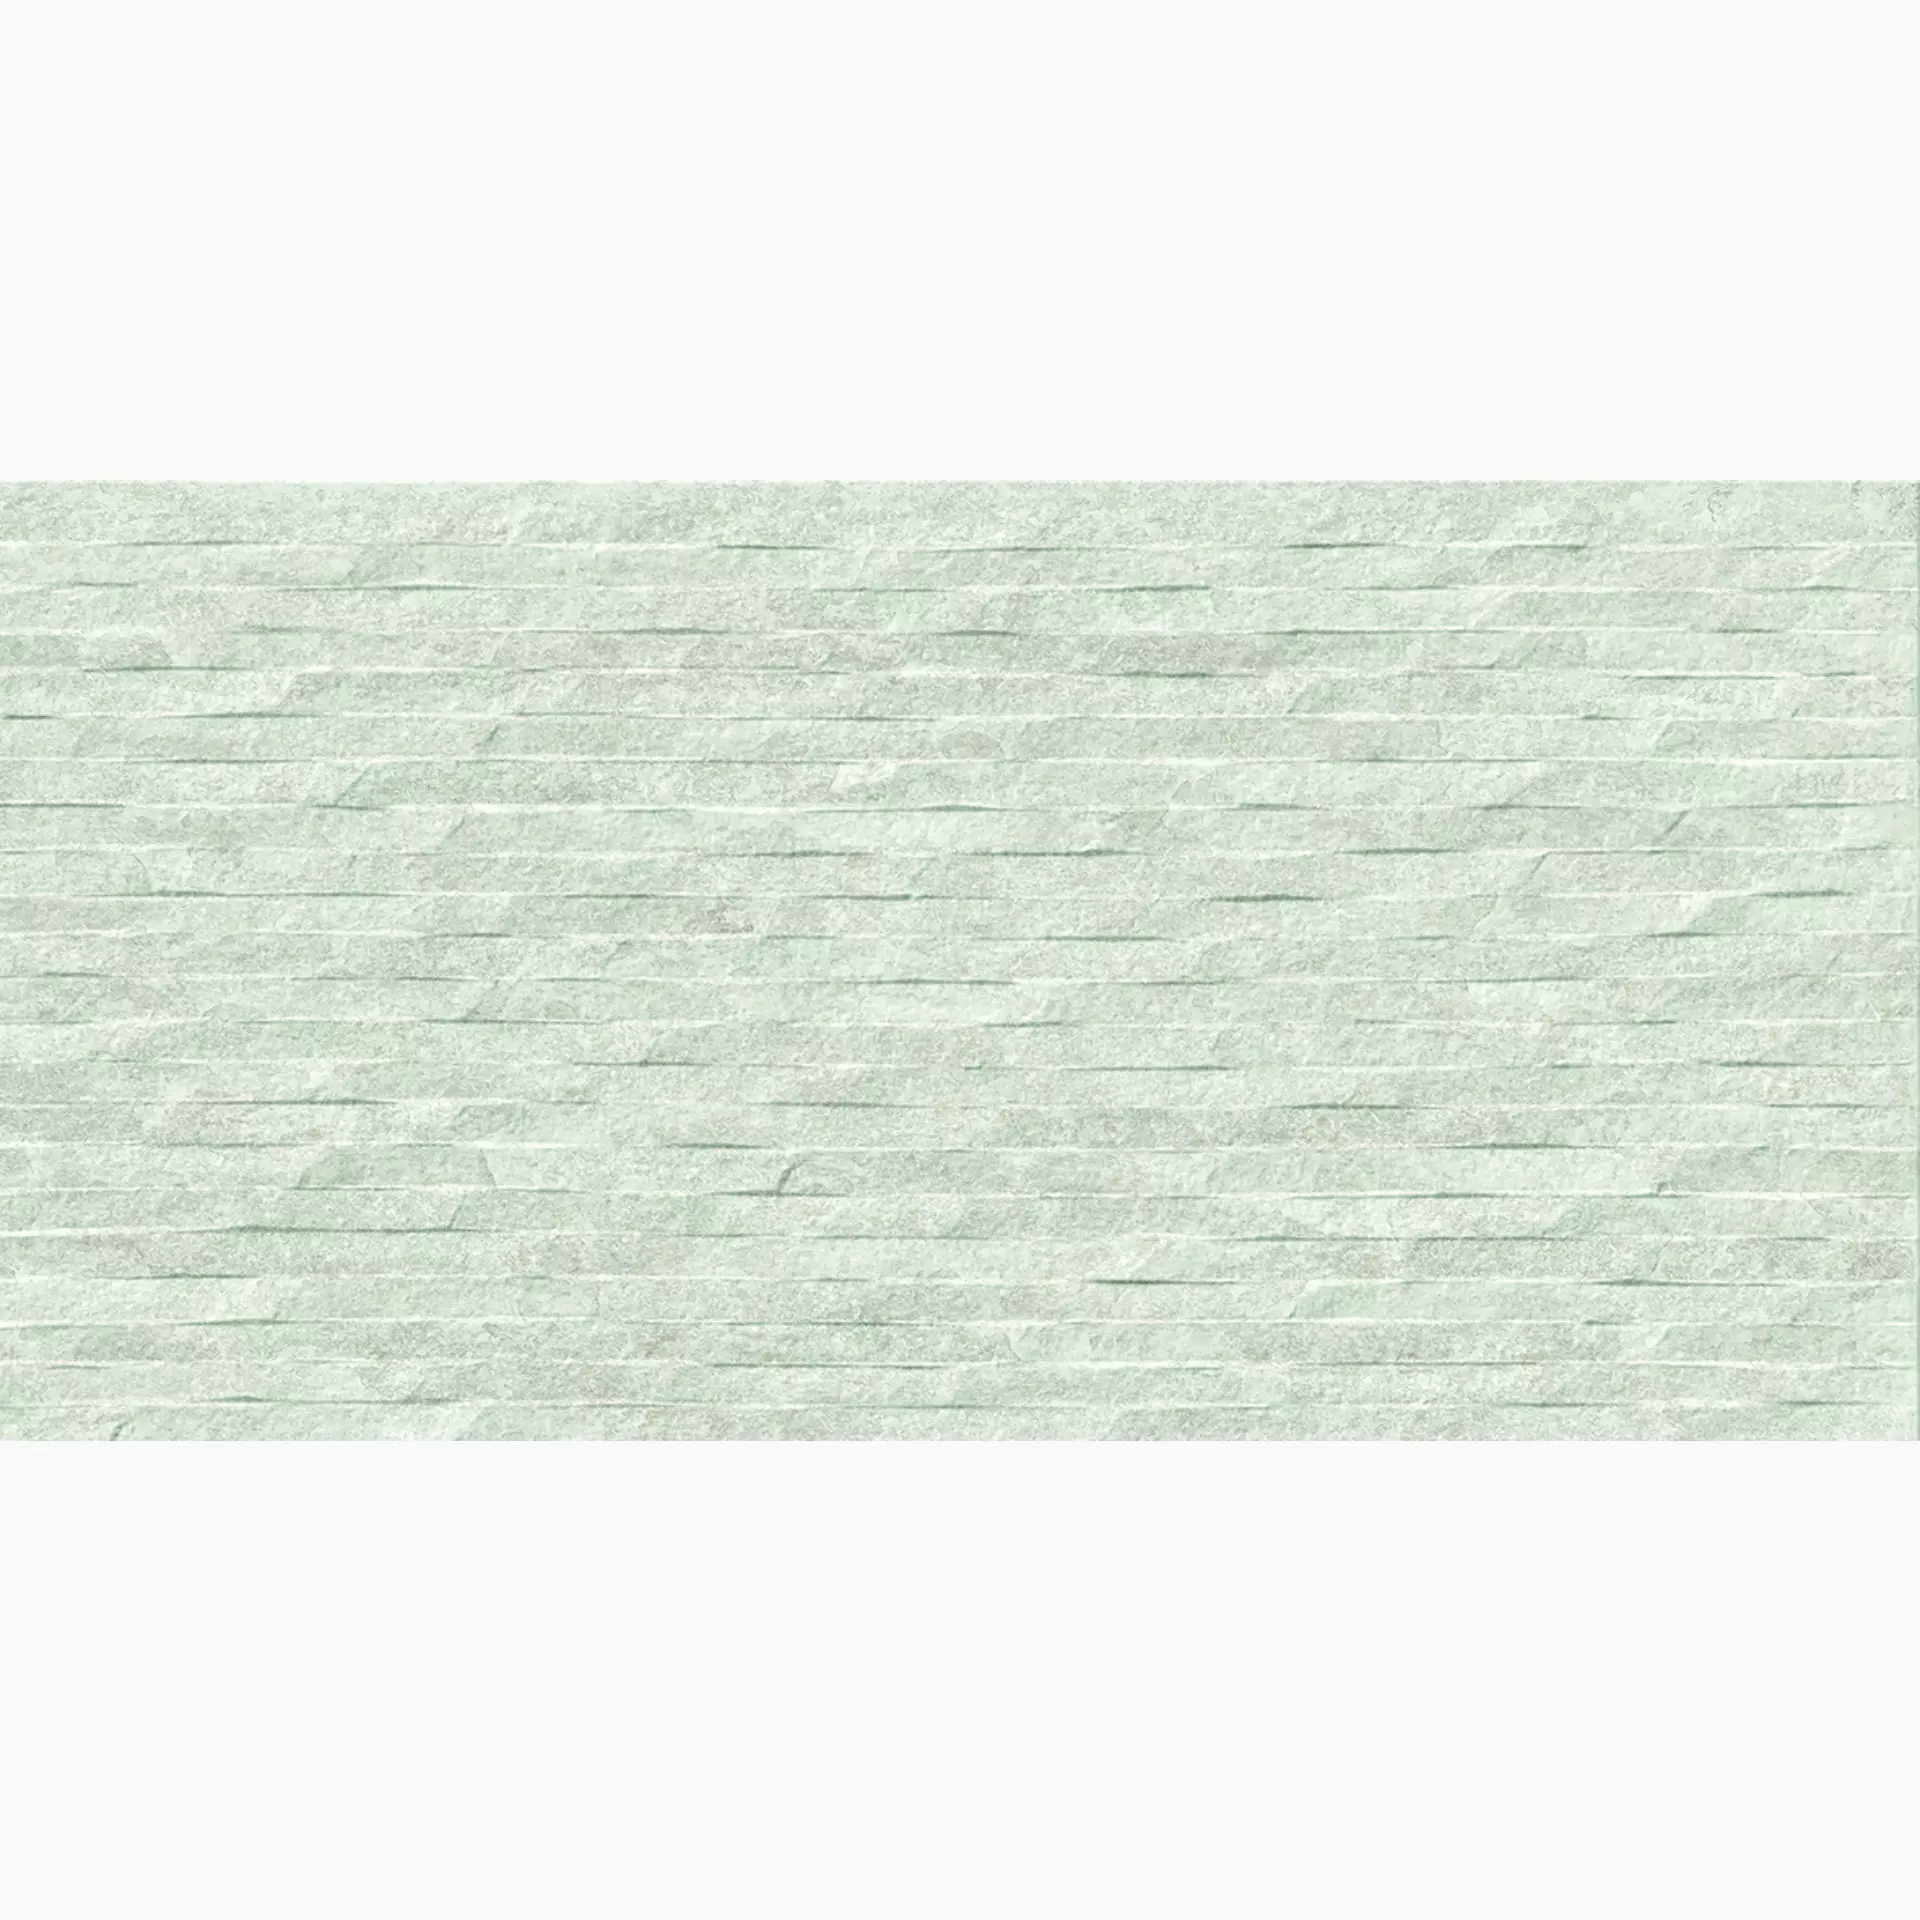 Ergon Oros Stone White Naturale EKWC 30x60cm rectified 9,5mm